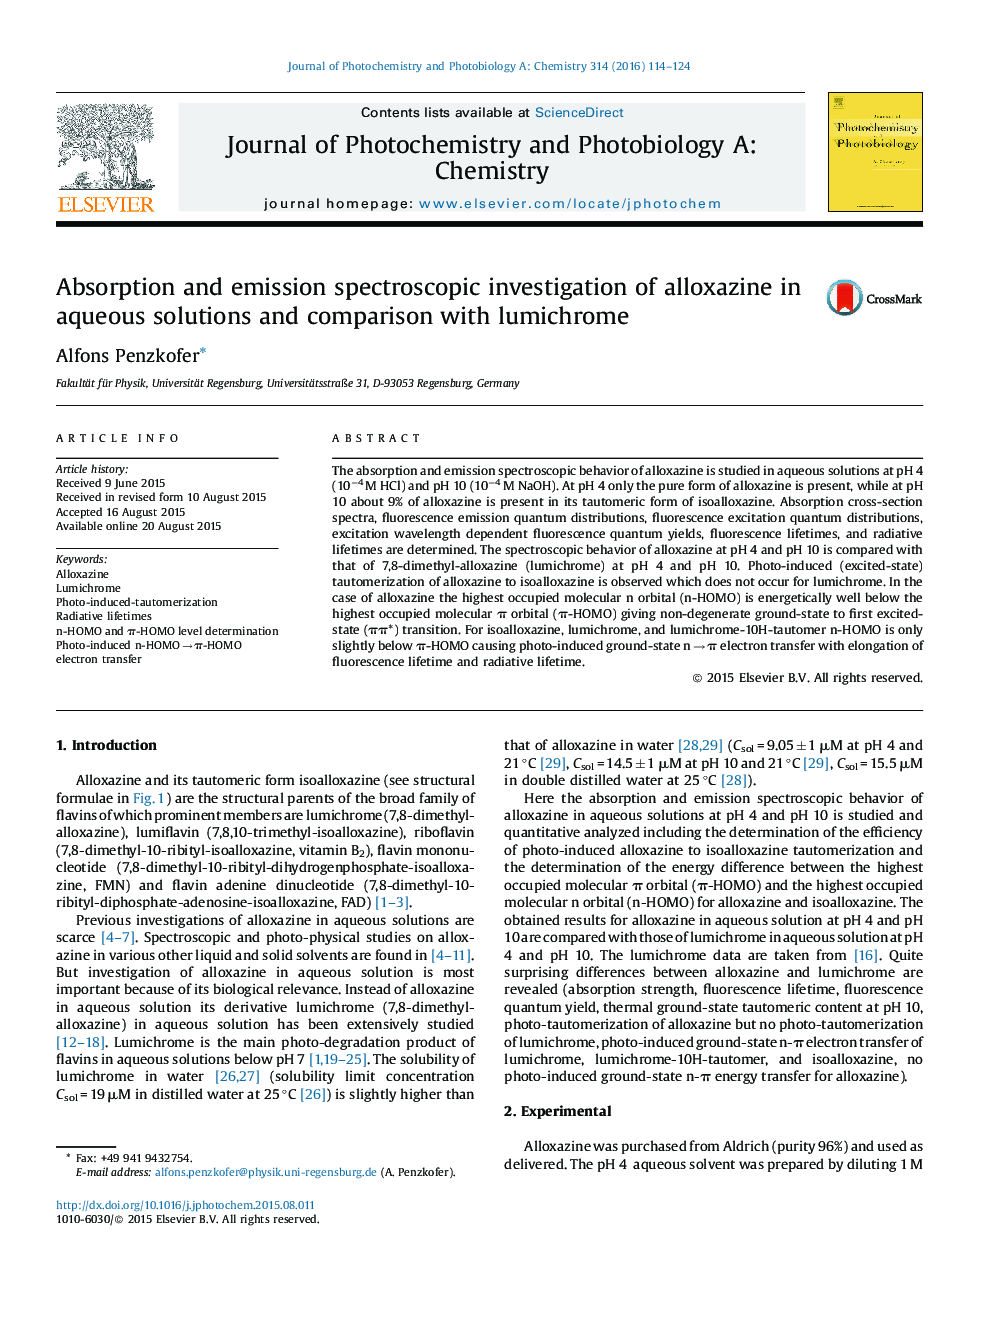 بررسی جذب و انتشار اسپکتروسکوپی آلوکسازین در محلول های آبی و مقایسه آن با لومیشرم 